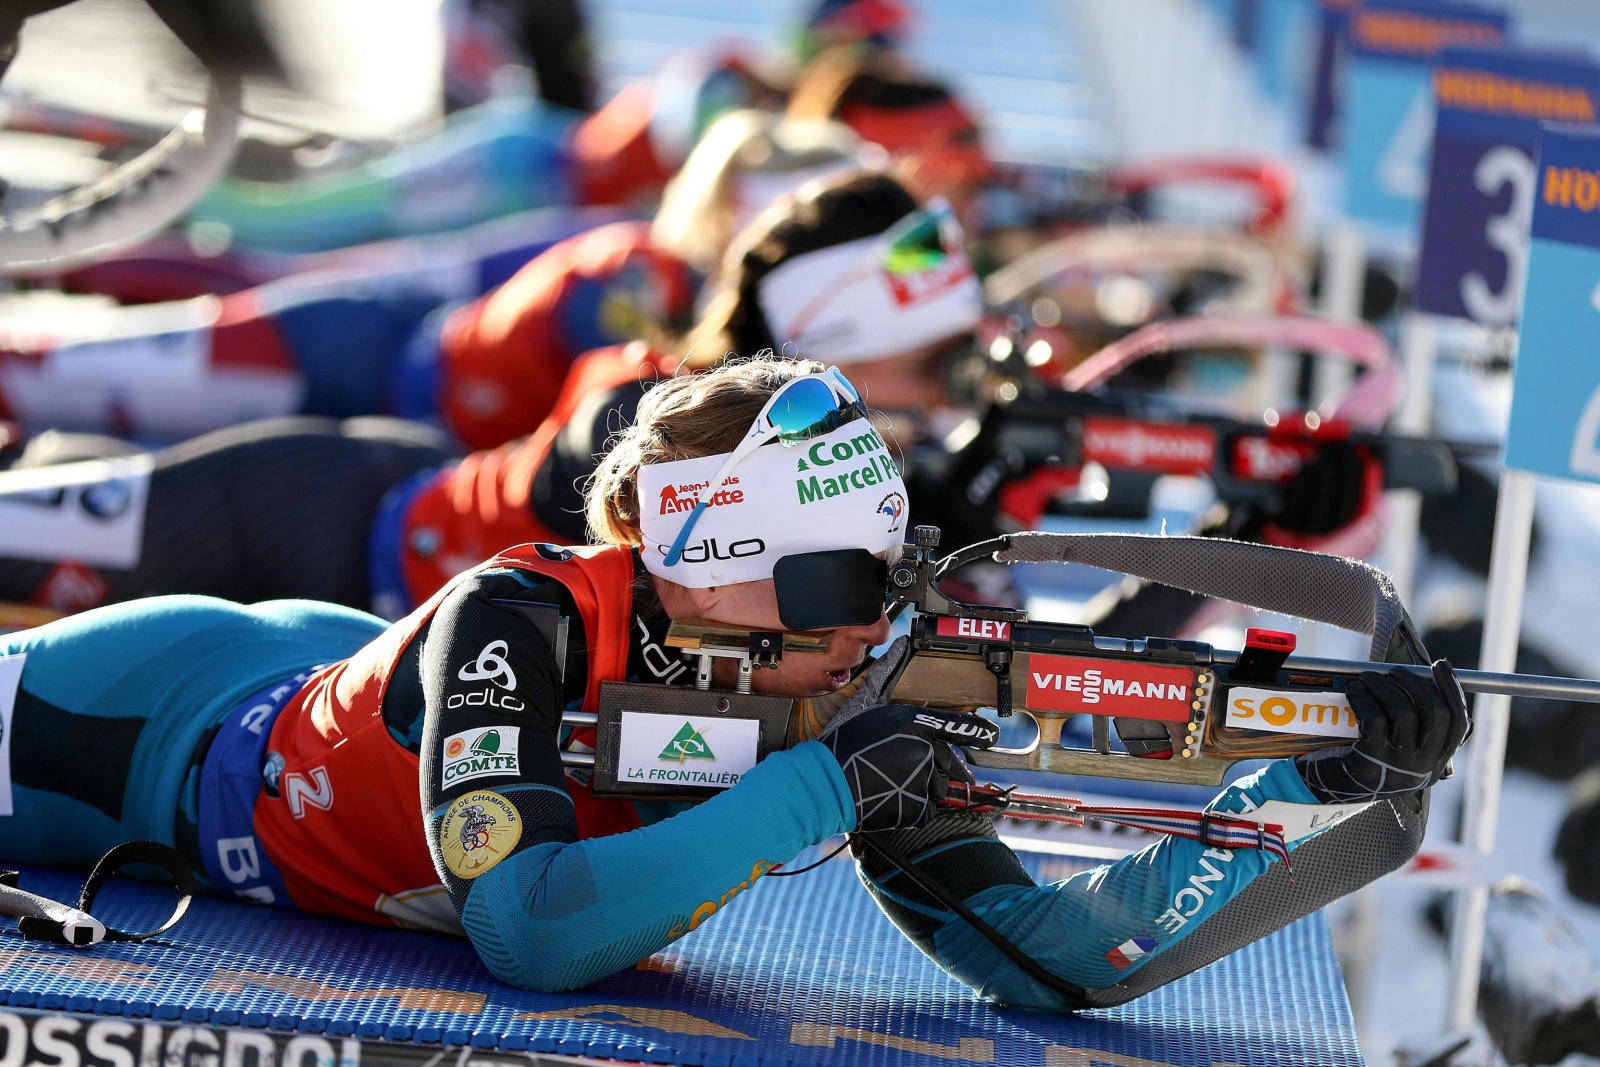 Biathlon, zawody Pucharu Świata w Antholz-Anterselva.
fot. EPA/ANDREA SOLERO